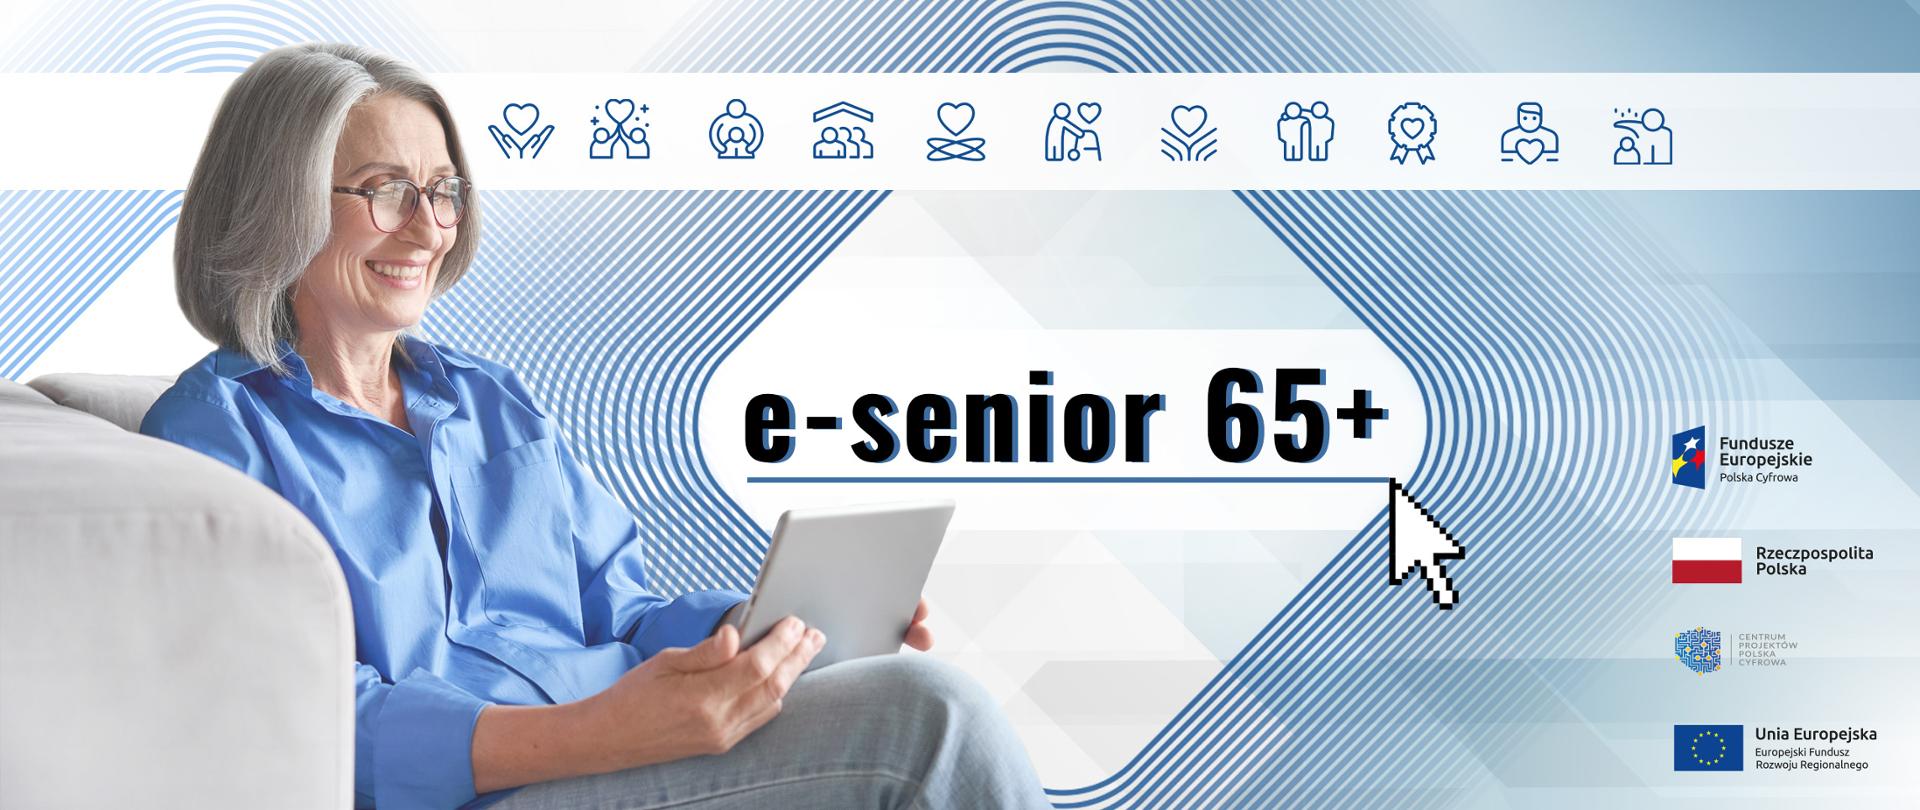 e-senior 65+